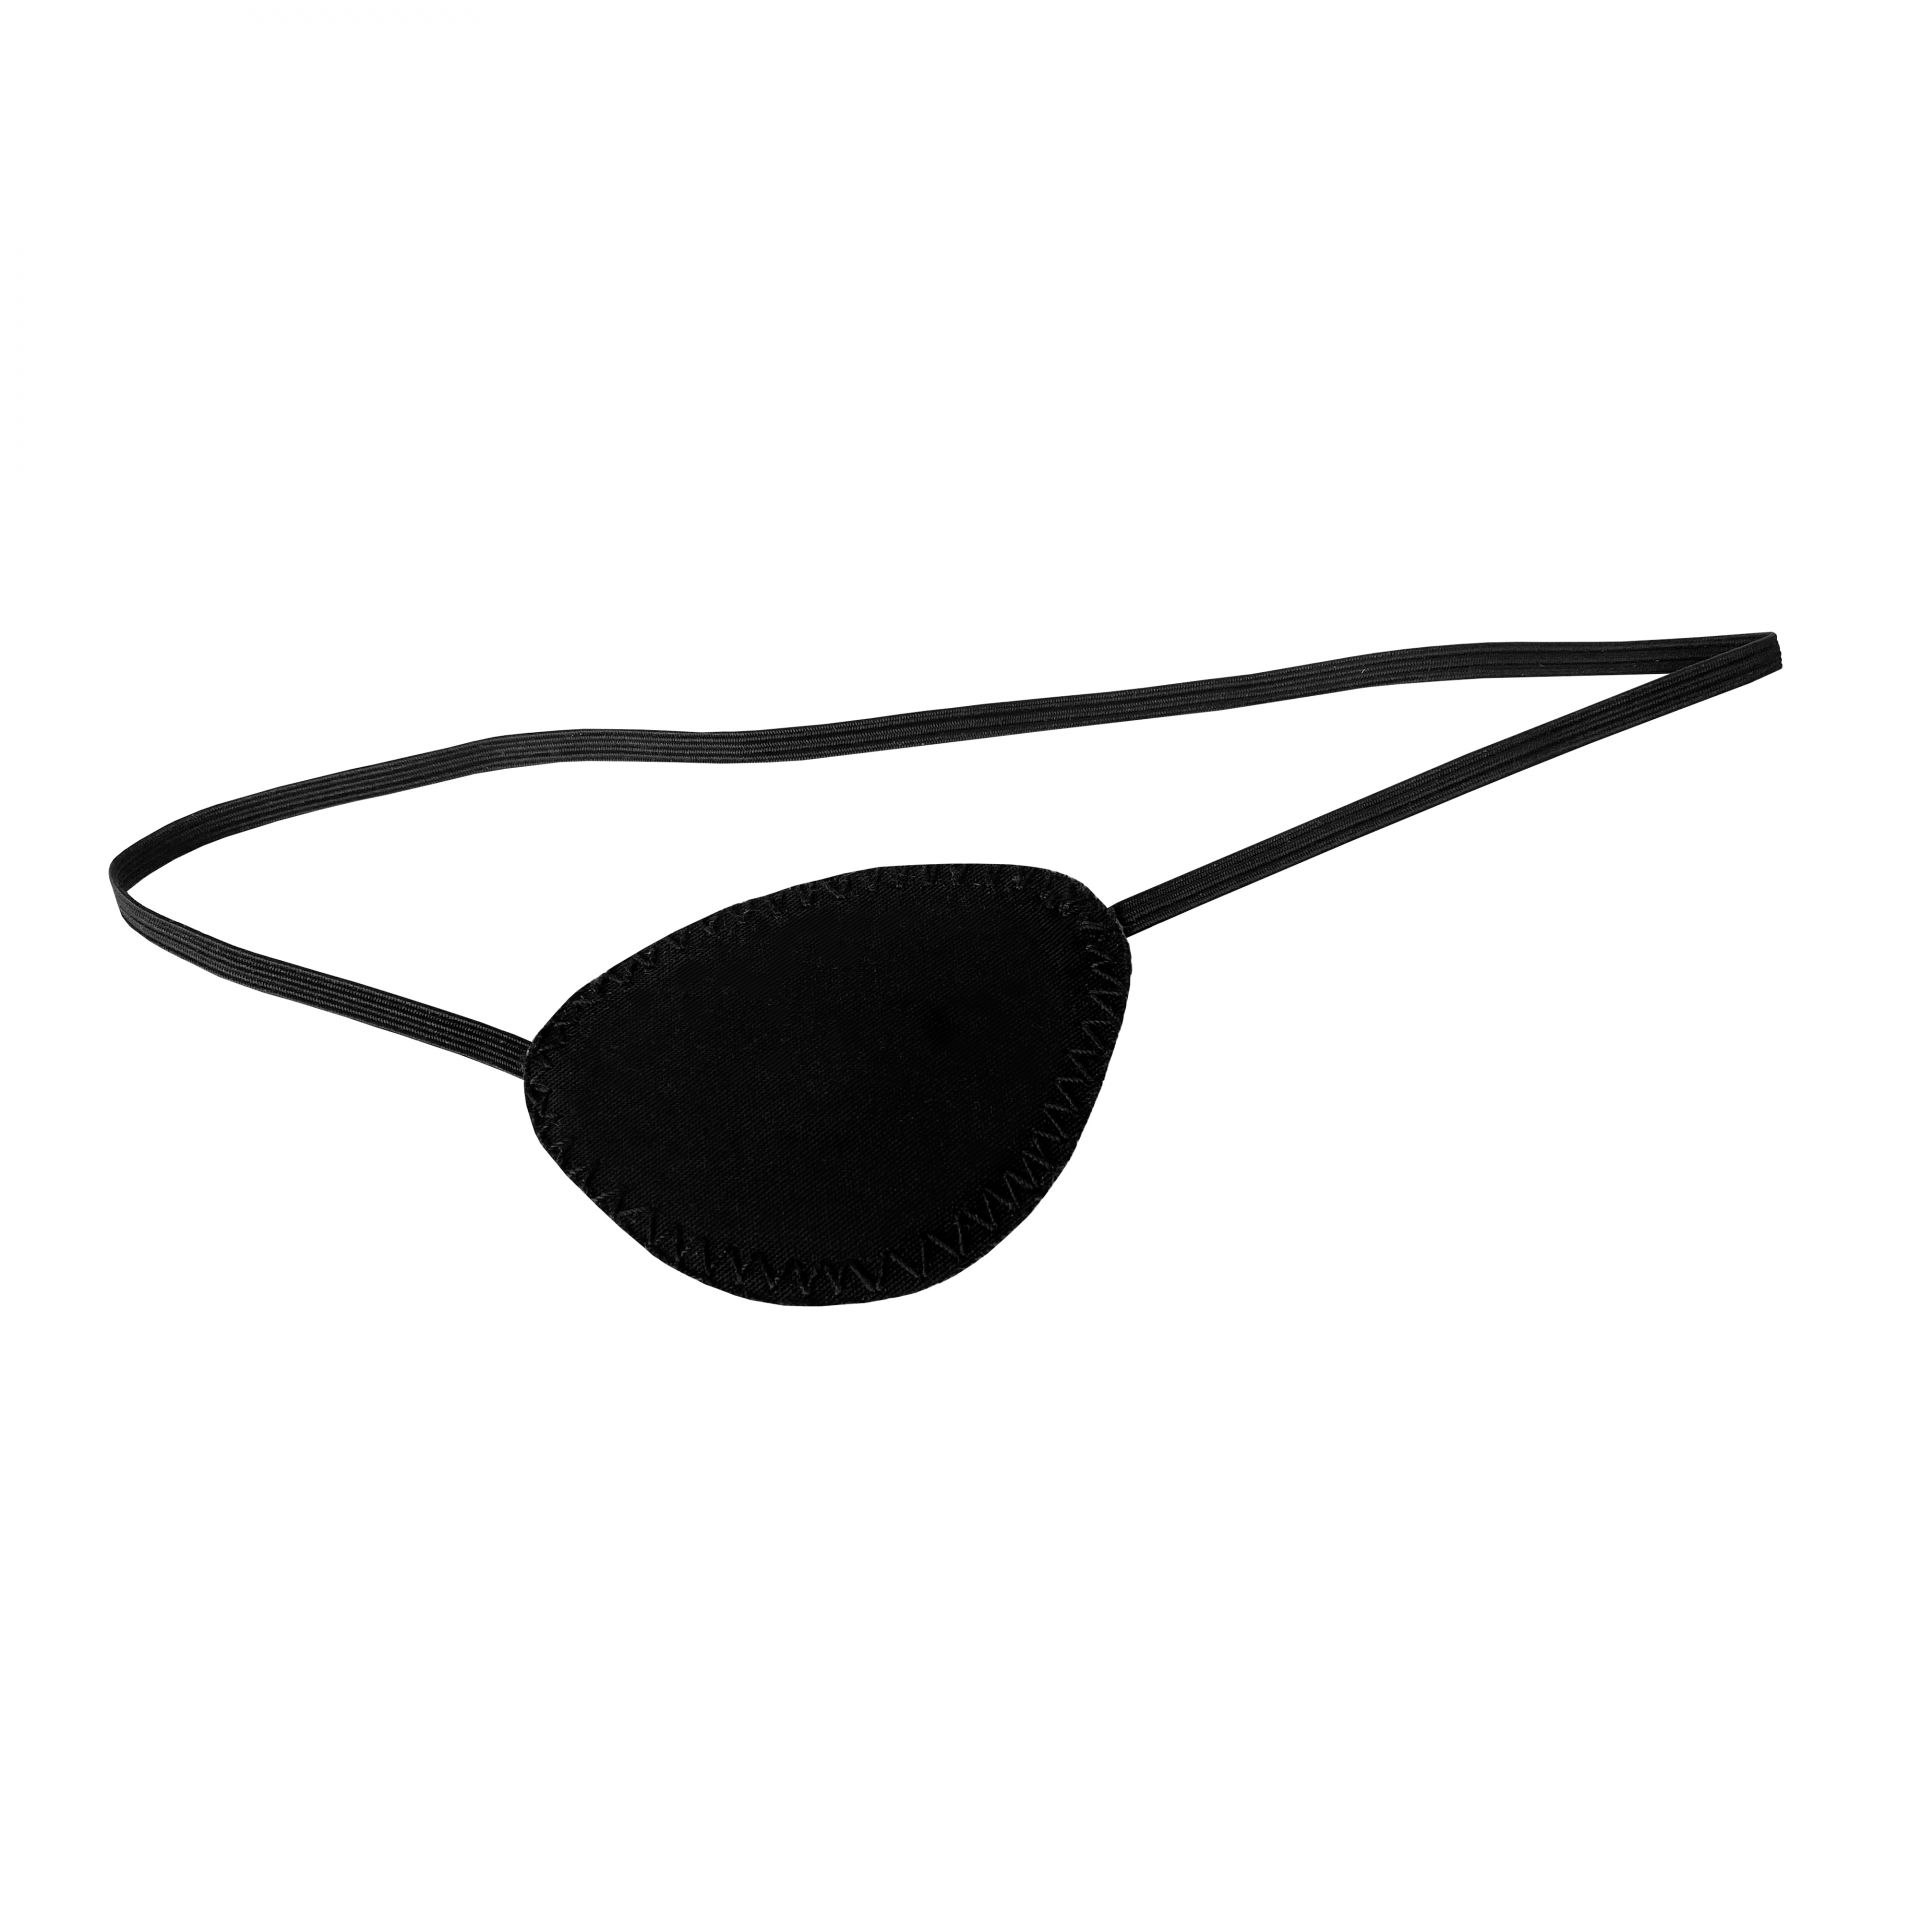 Brinkmann Medical Augenklappe mit Gummiband, schwarz 